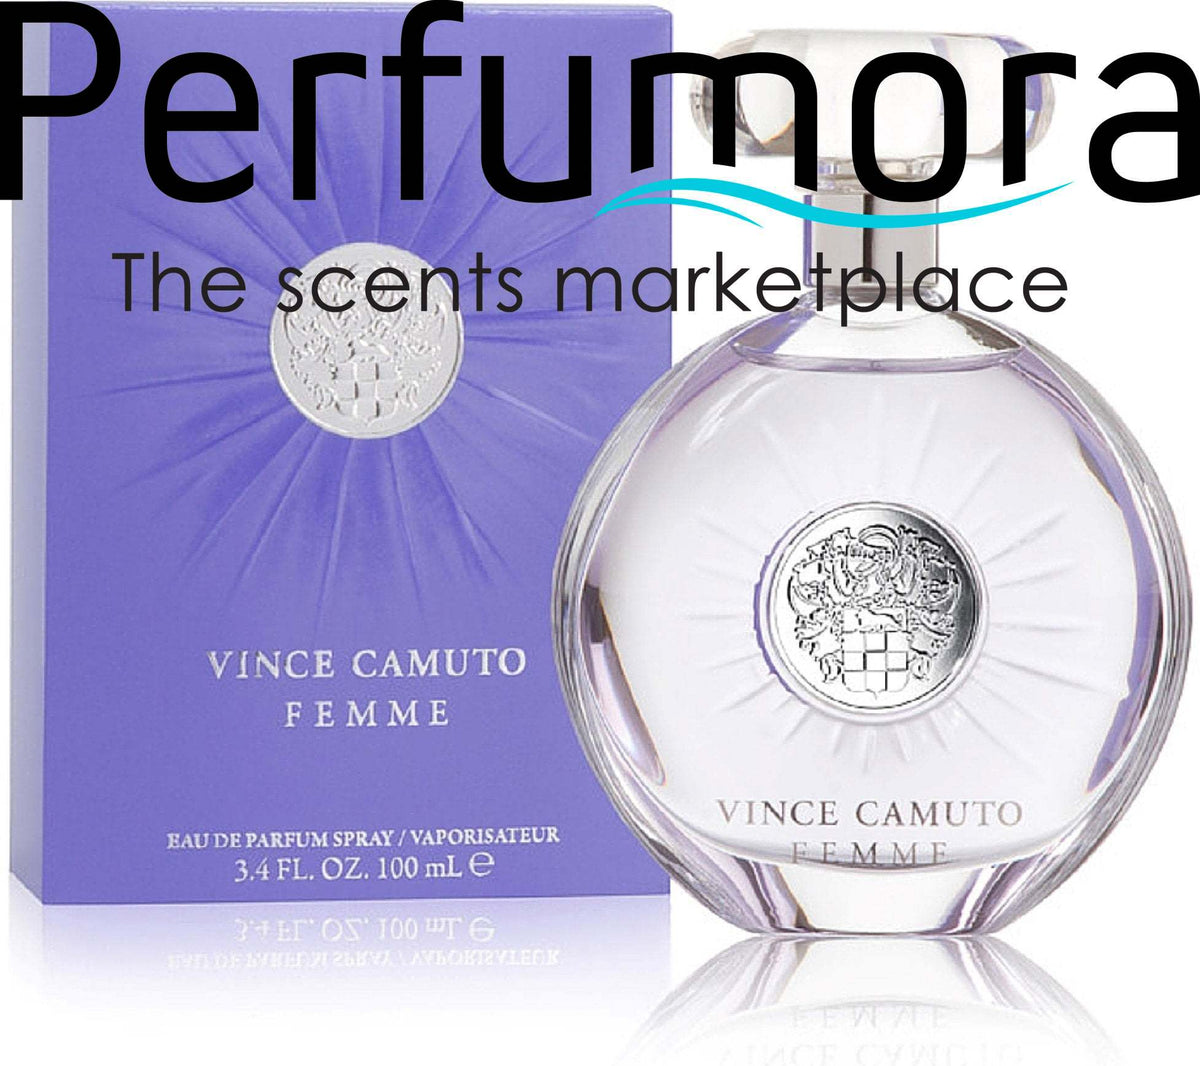 Vince Camuto Femme by Vince Camuto for Women -  Eau De Parfum Spray